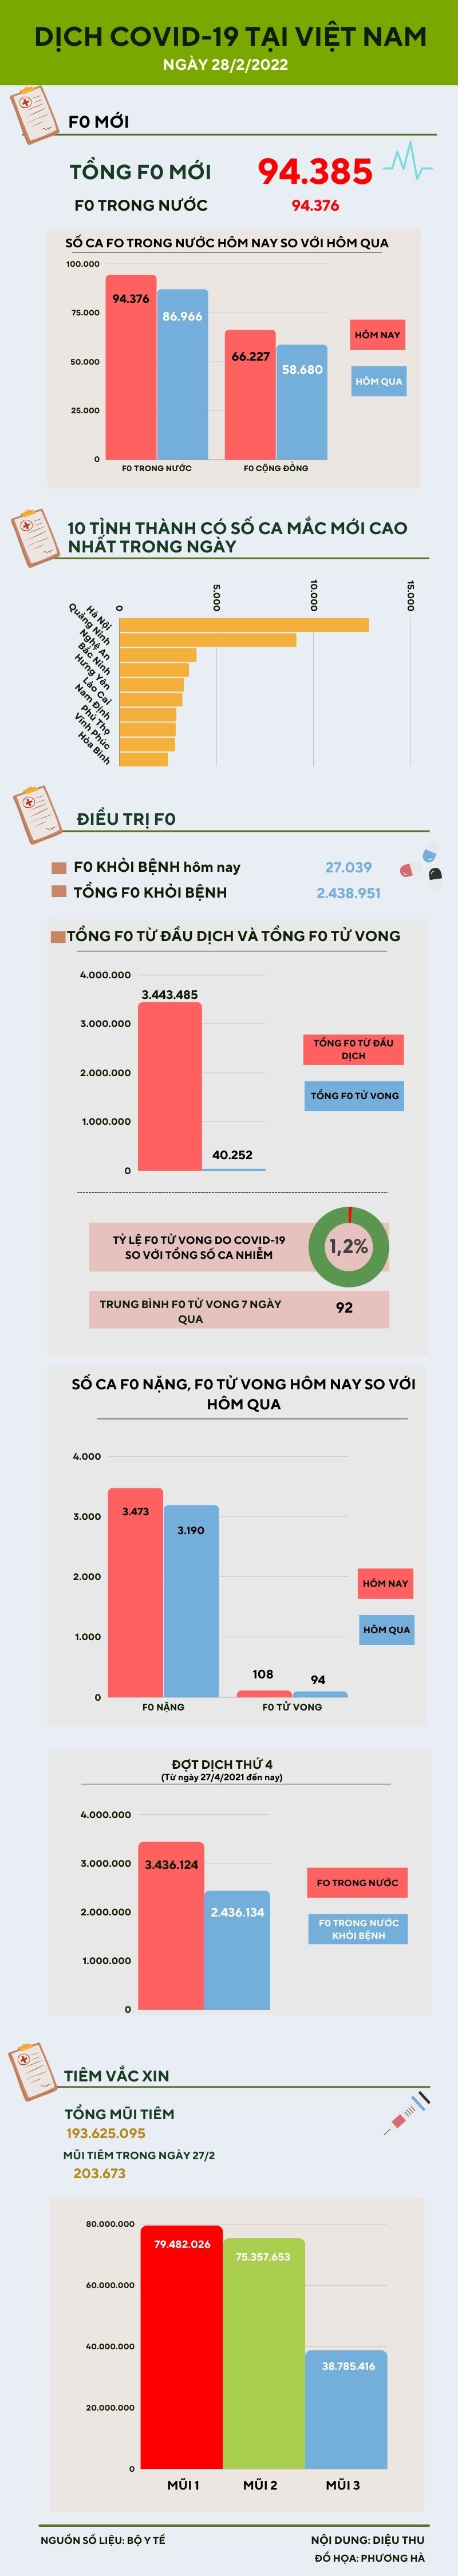 Ngày 28/2: Thêm 94.376 ca COVID-19 trong nước, Quảng Ninh bổ sung 28.095 ca - 1